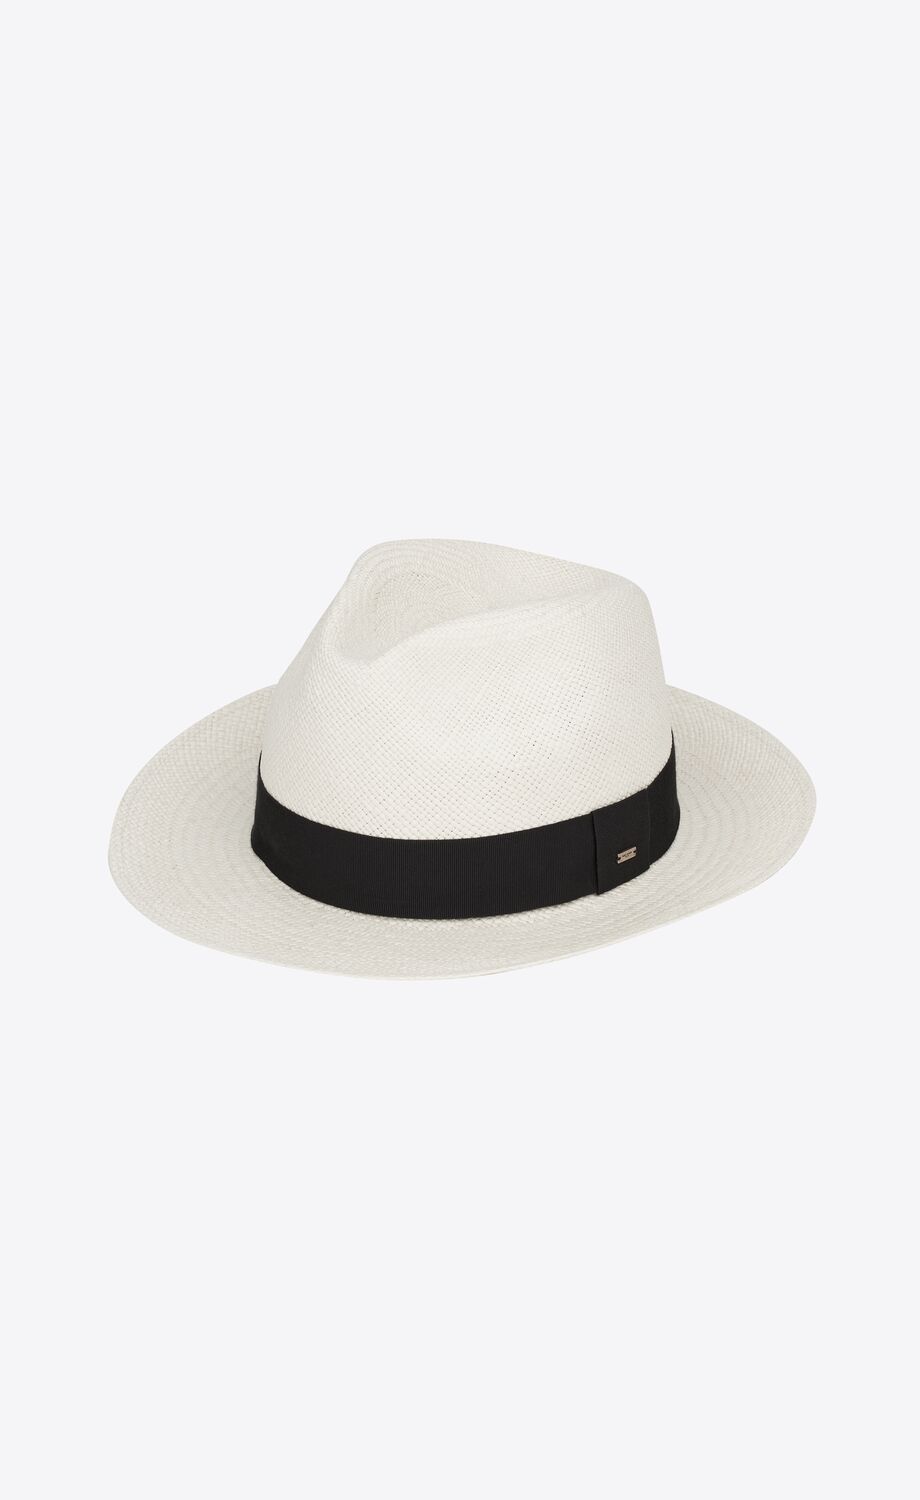 Saint Laurent Fedora Hat in Rabbit Felt